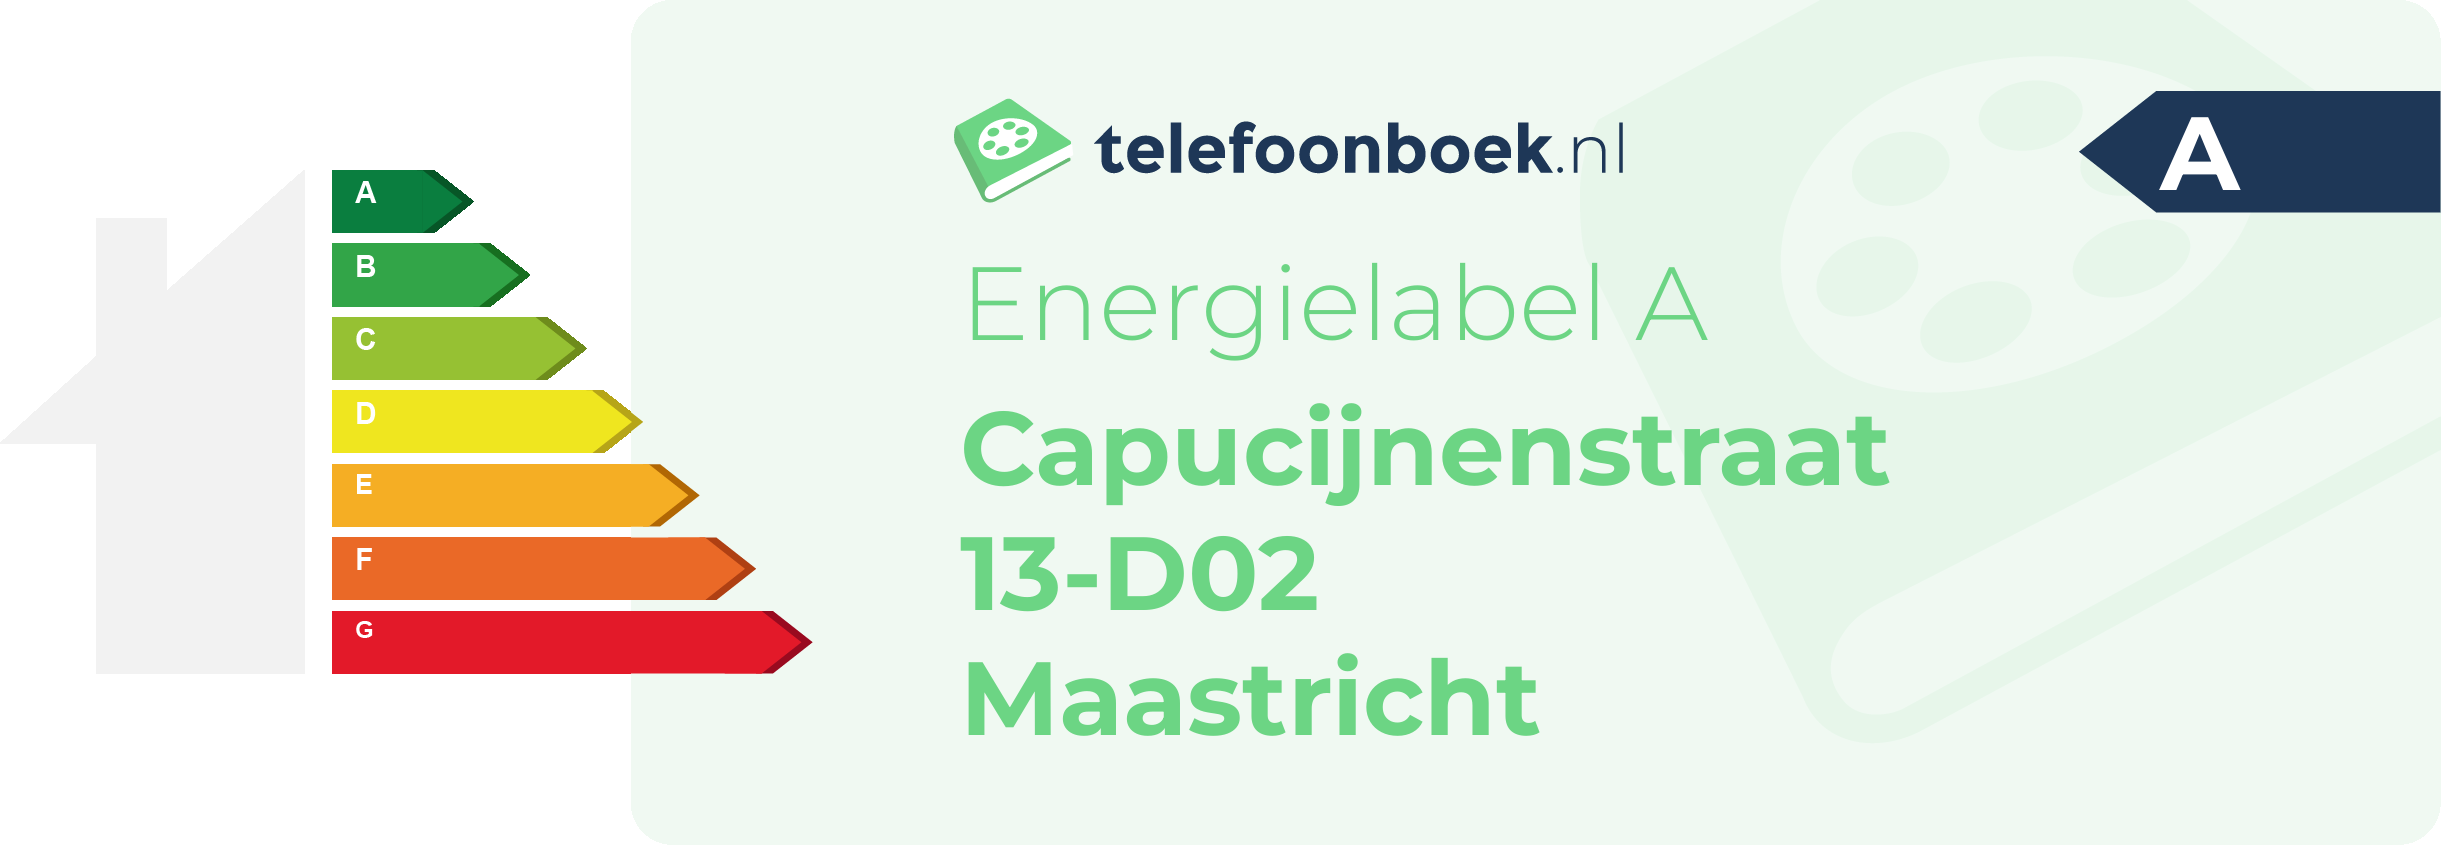 Energielabel Capucijnenstraat 13-D02 Maastricht